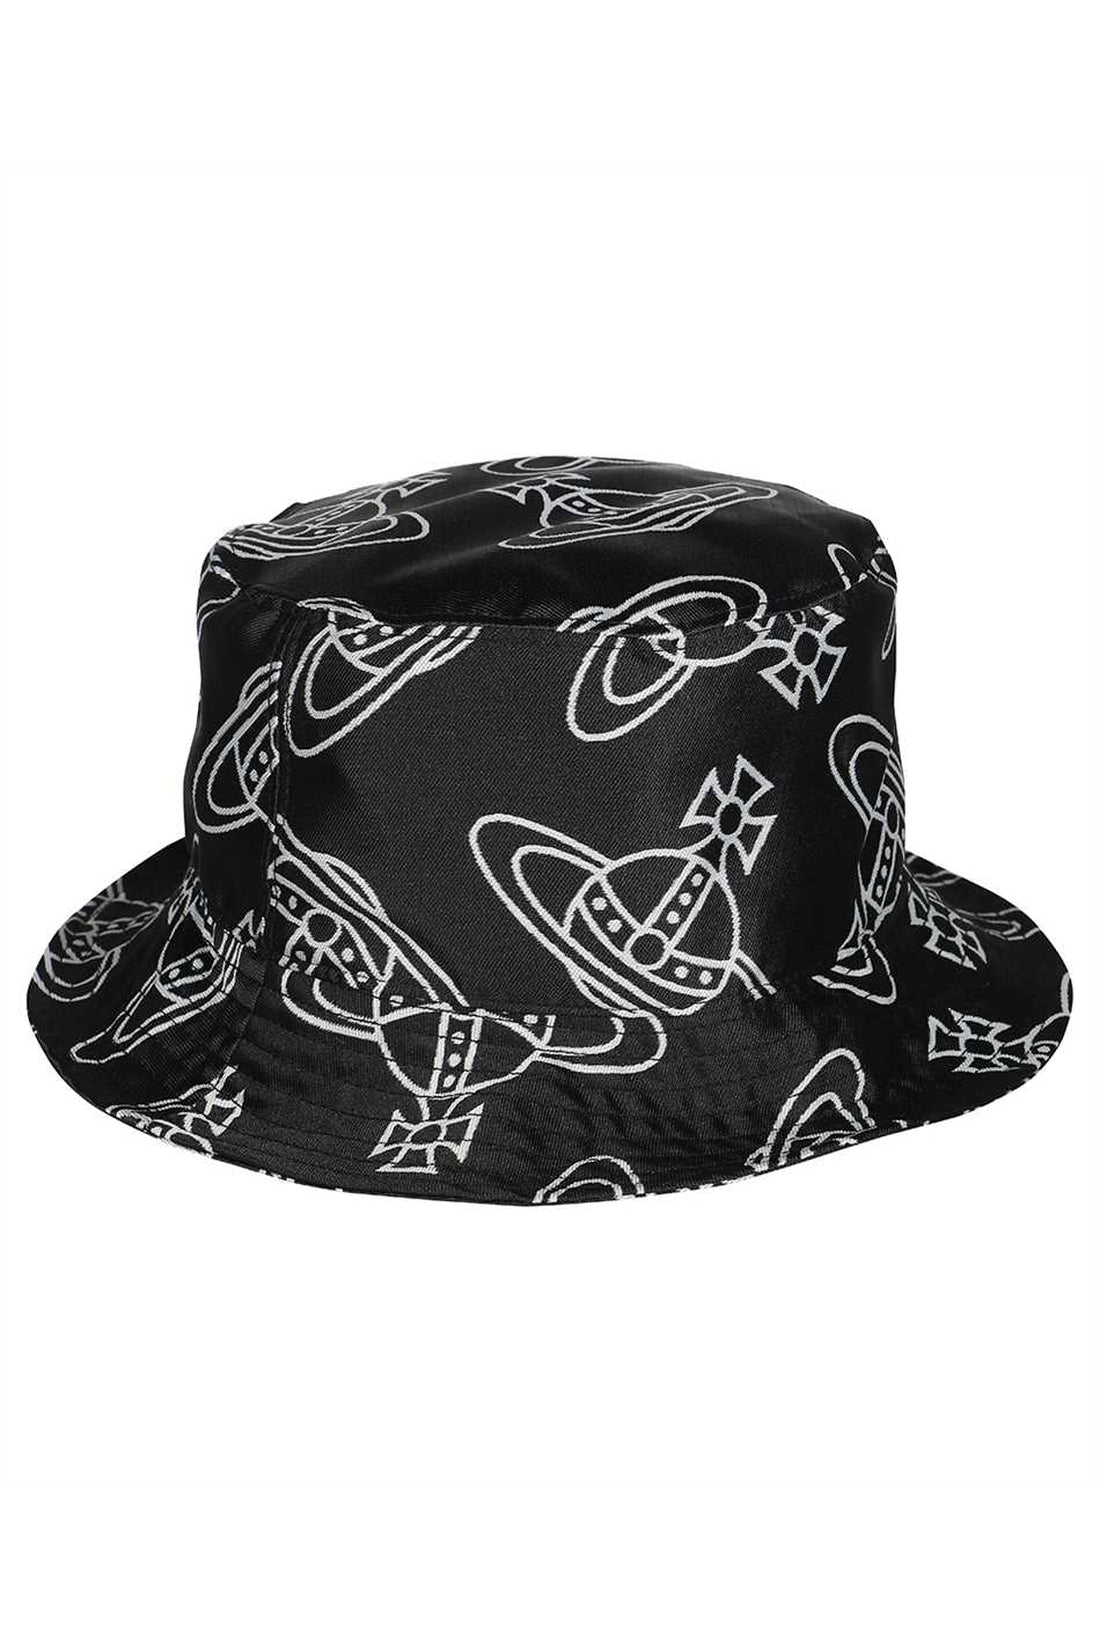 Vivienne Westwood-OUTLET-SALE-Bucket hat-ARCHIVIST